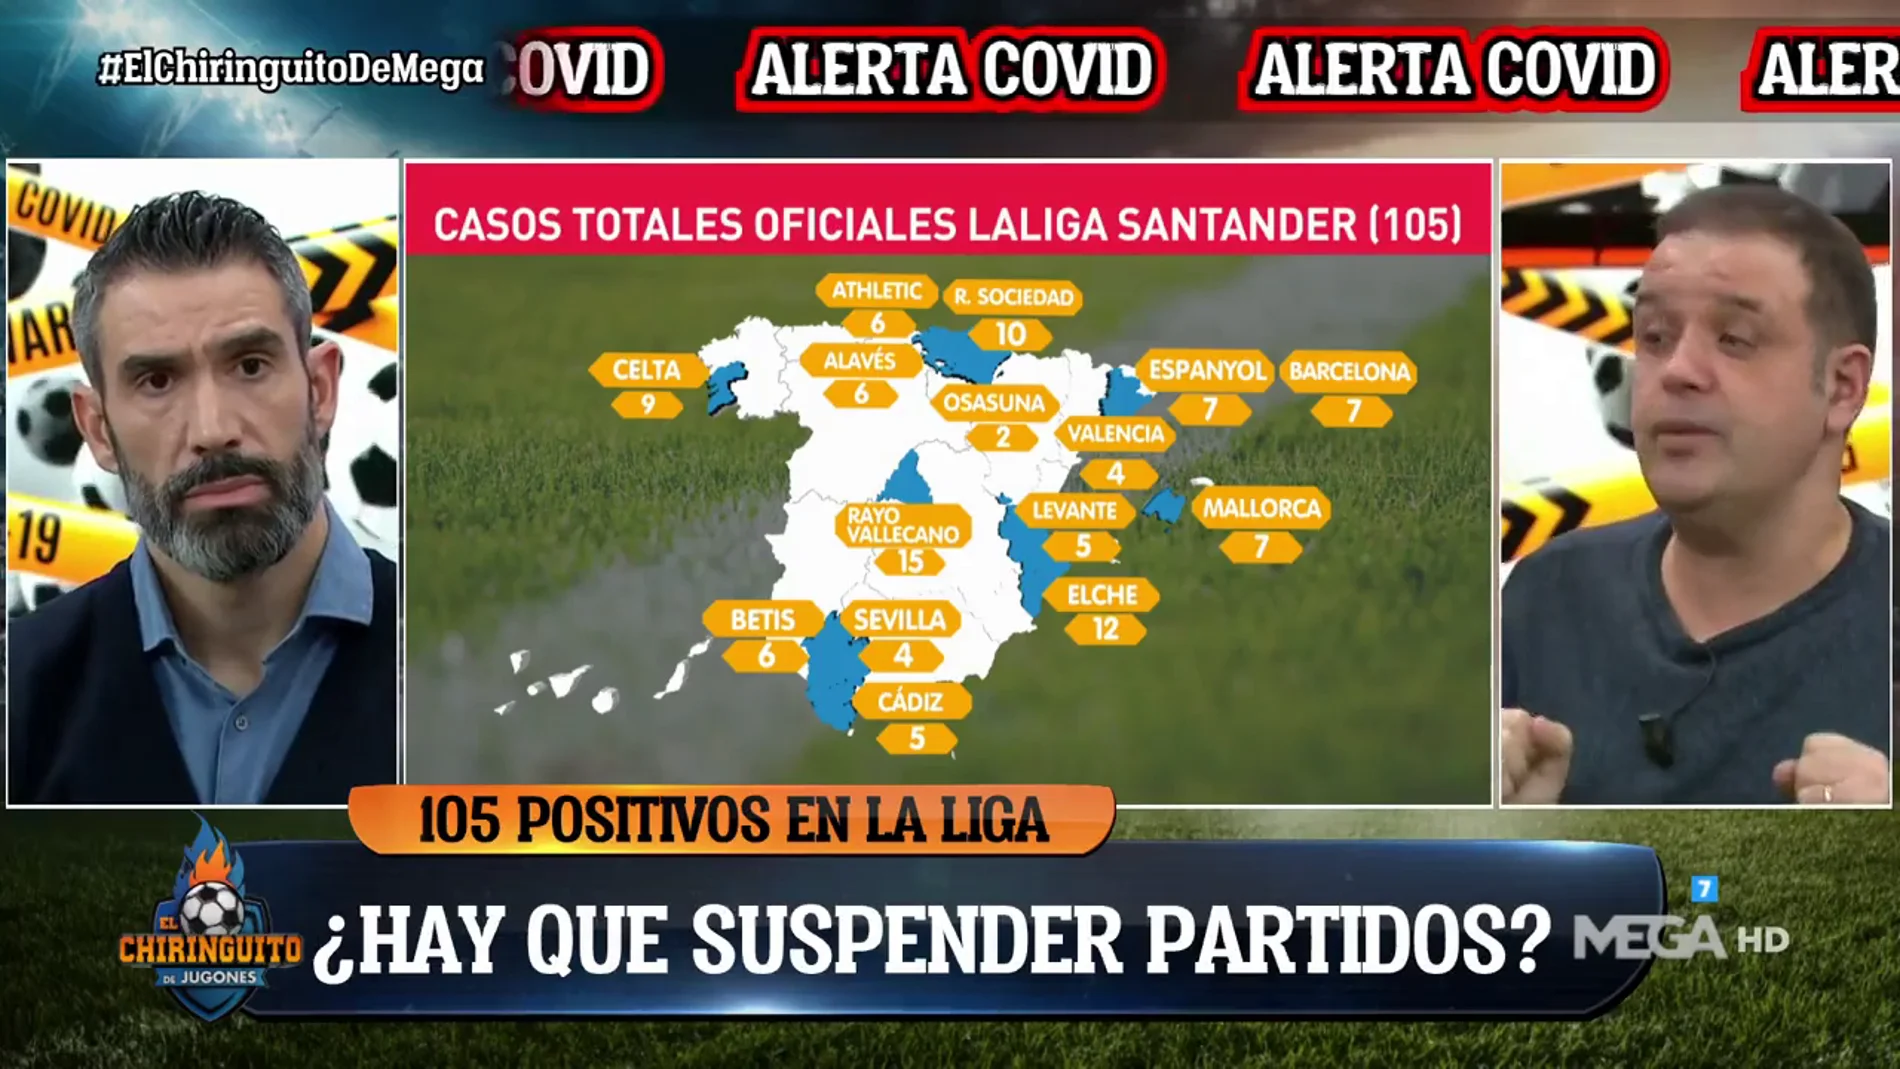 El choque entre Fernando Sanz y Kike Mateu por la normativa Covid de La Liga